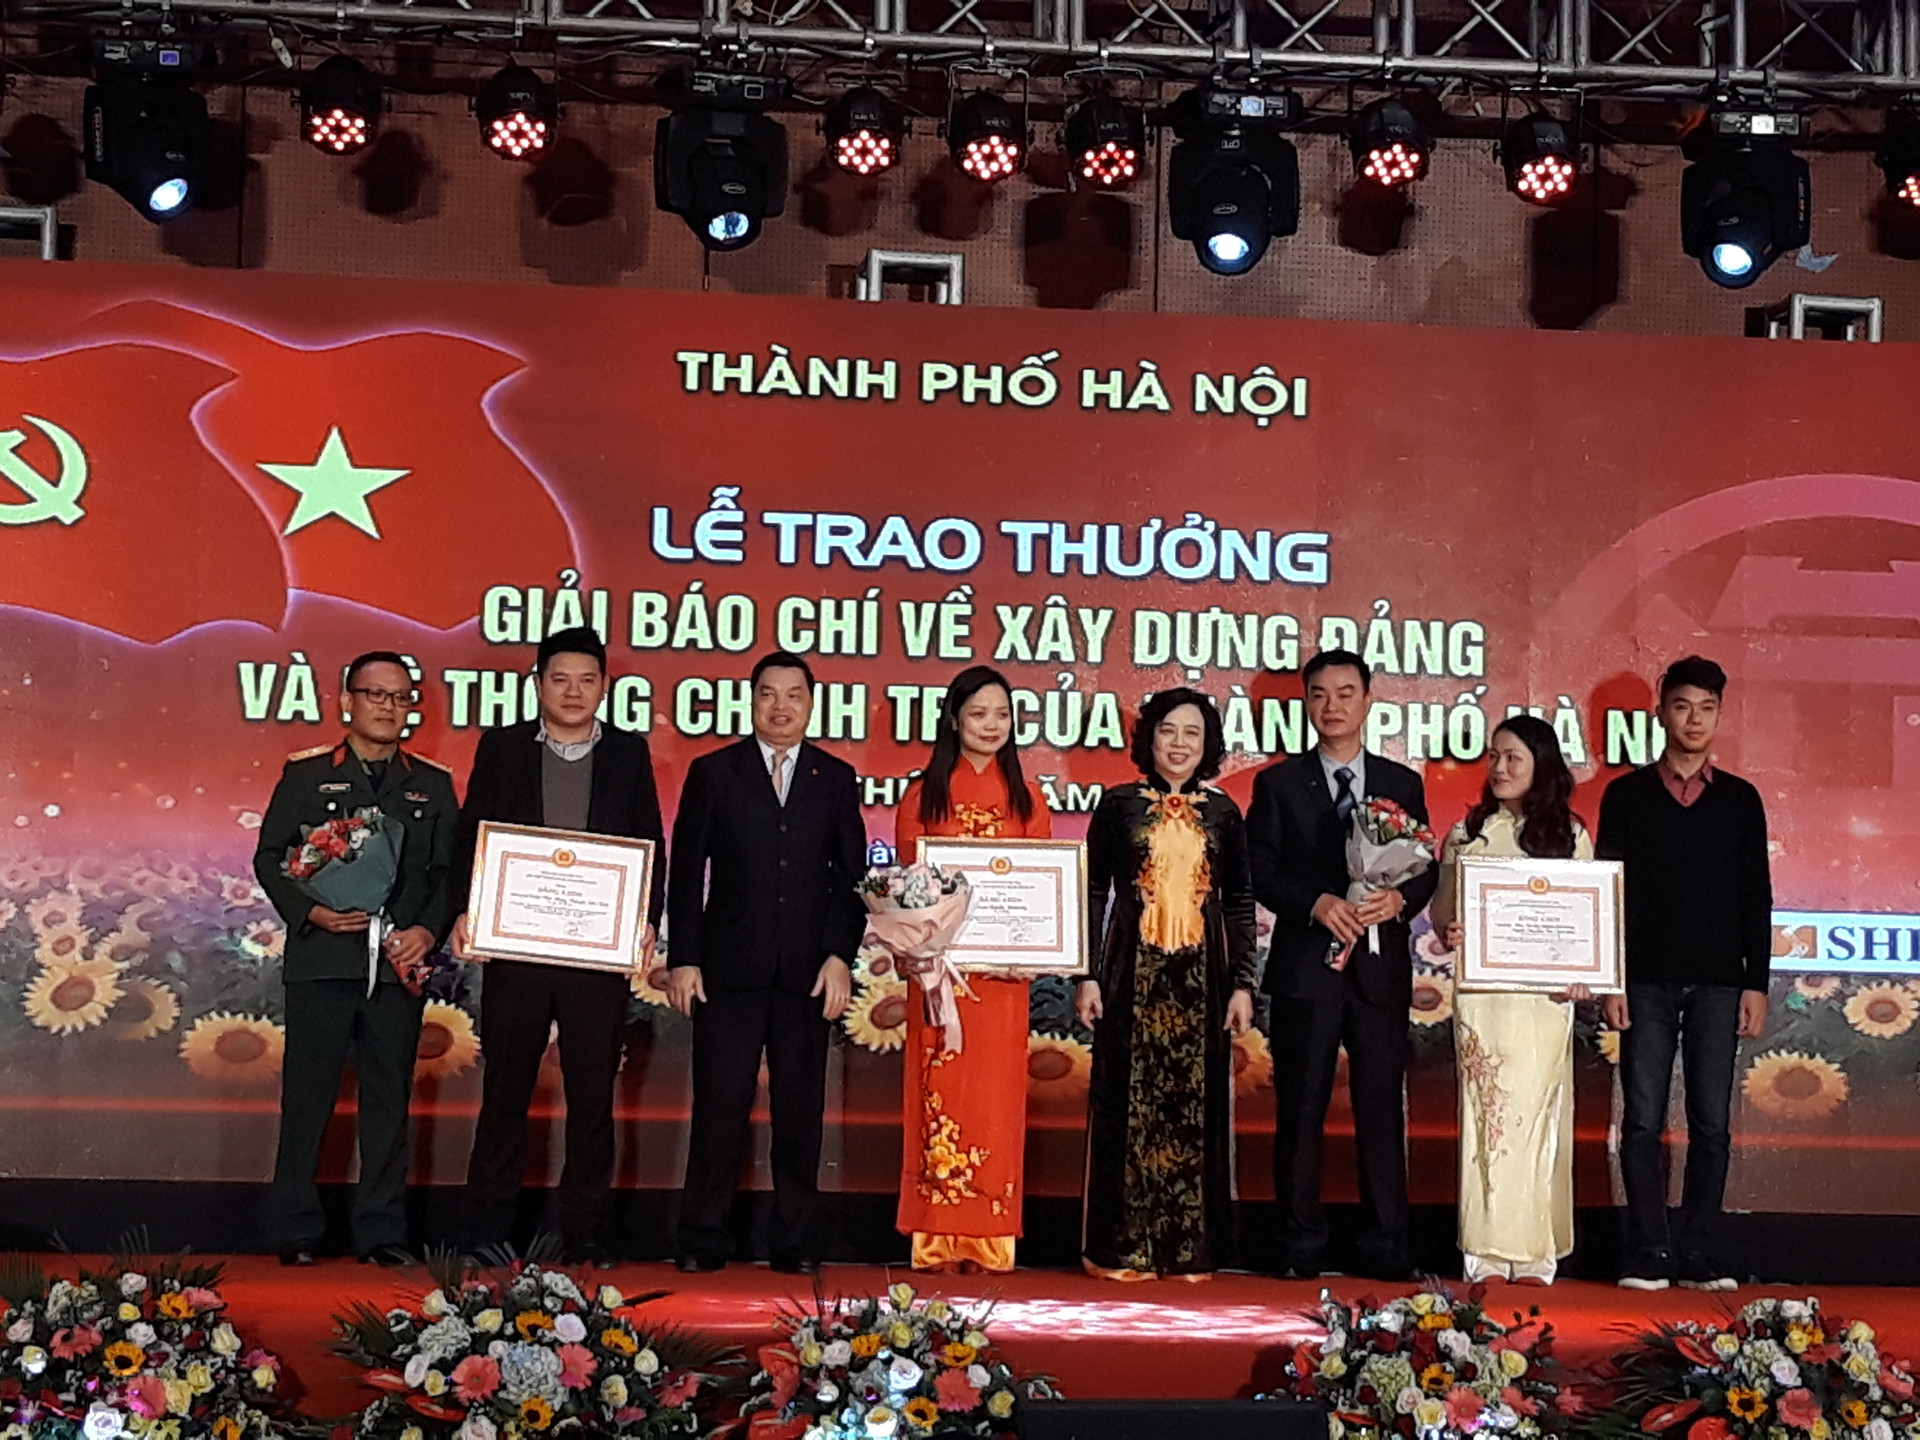 Hà Nội trao giải báo chí về xây dựng Đảng và phát triển văn hóa